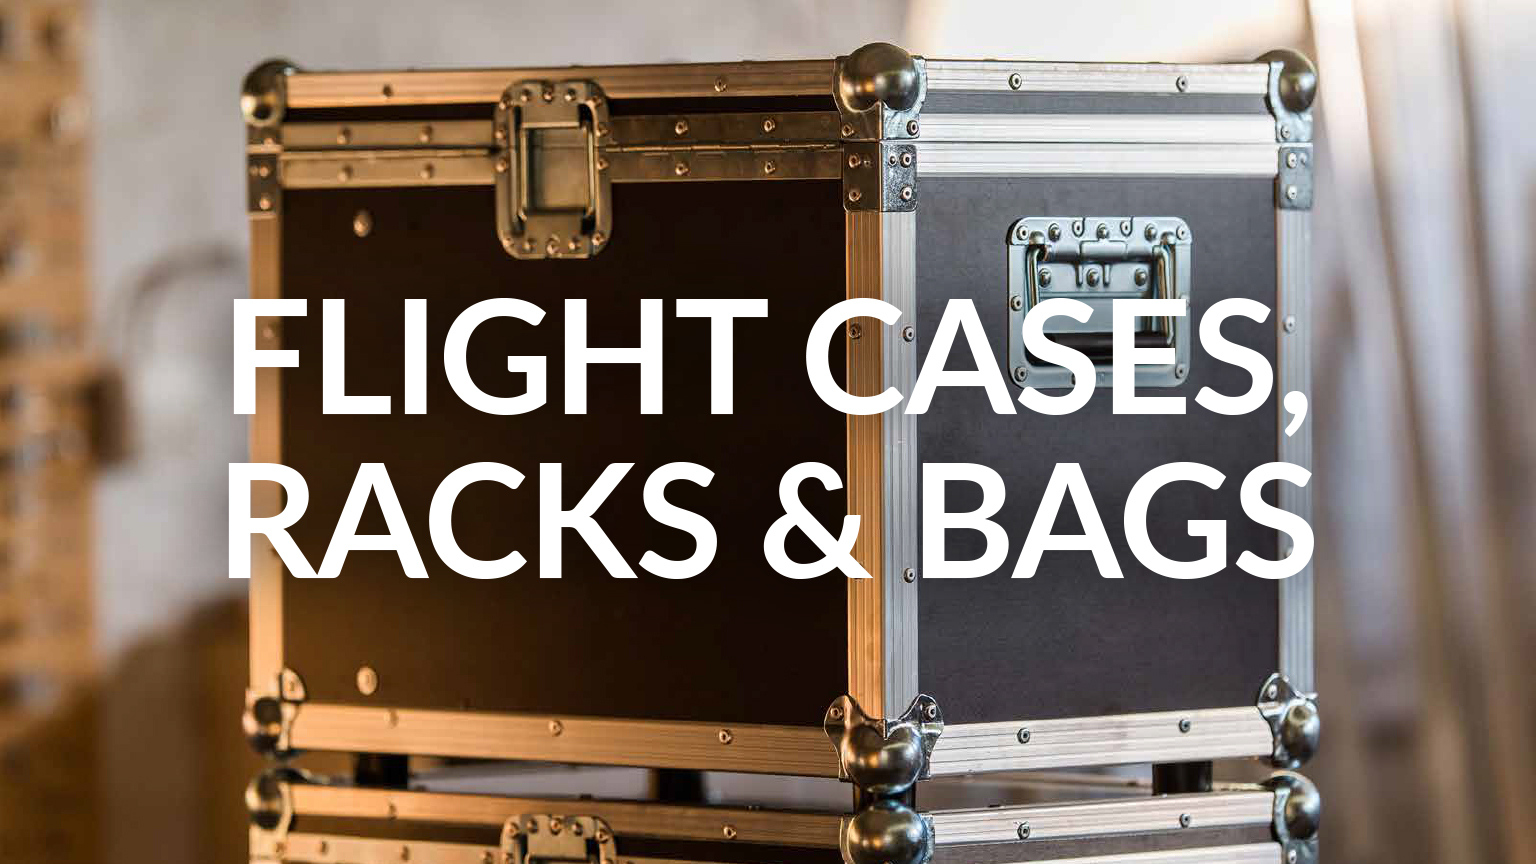 Flightcases Racks & Bags